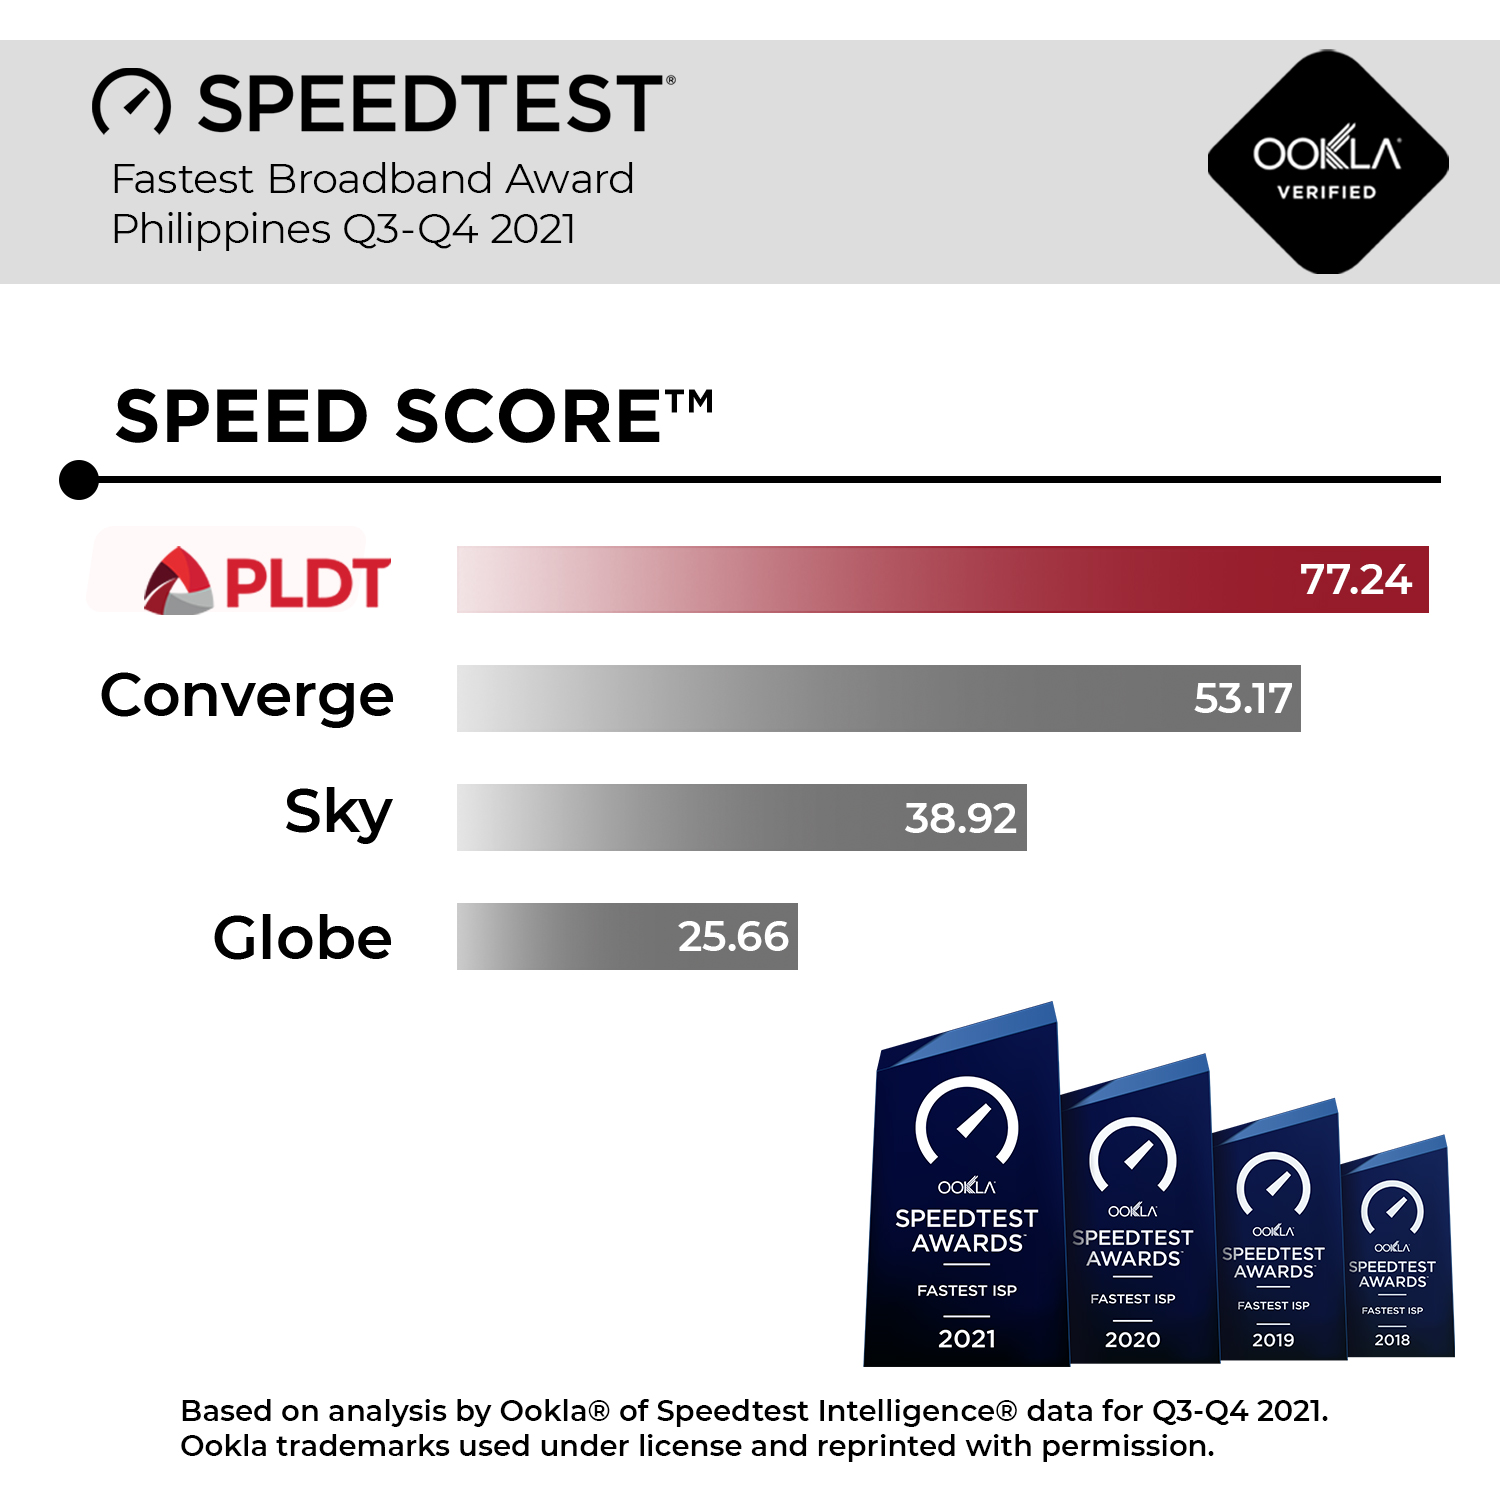 PLDT Speed Score